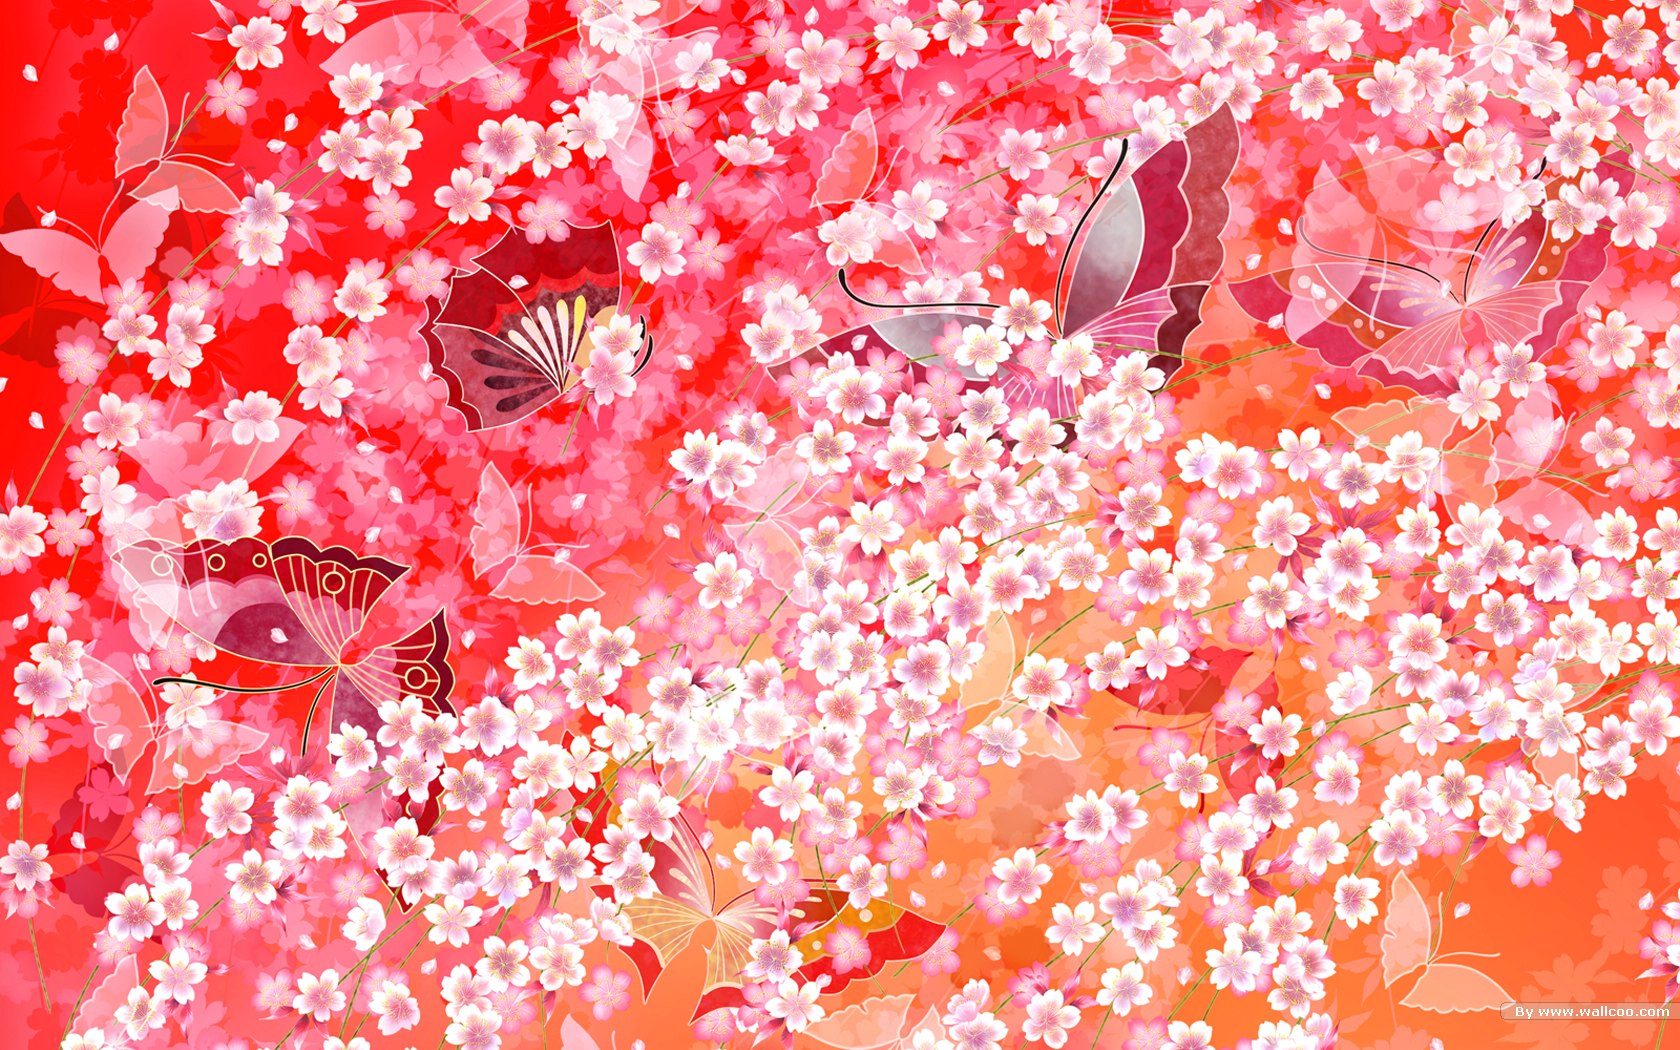 壁纸1680x1050日本风格色彩与图案设计壁纸壁纸 日本风格色彩与图案设计壁纸壁纸 日本风格色彩与图案设计壁纸图片 日本风格色彩与图案设计壁纸素材 创意壁纸 创意图库 创意图片素材桌面壁纸